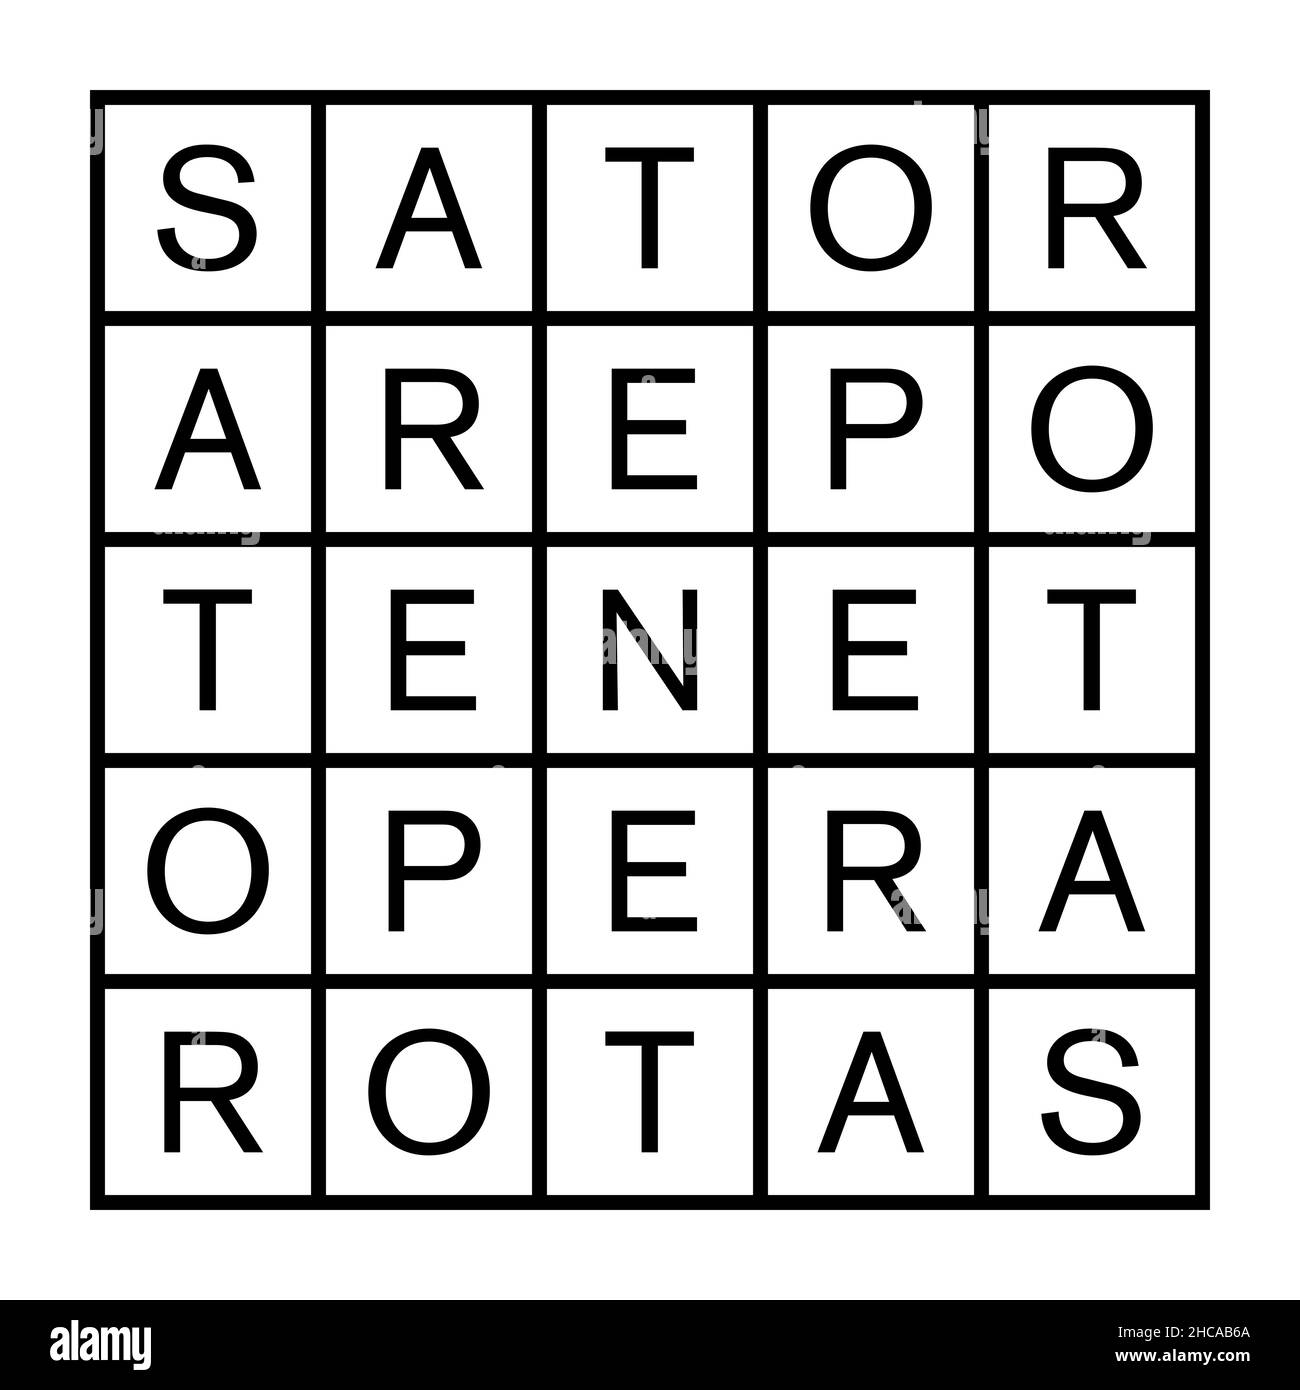 Piazza Sator o Piazza Rotas. Quadrato bidimensionale contenente il palindromo latino di cinque parole Sator, Arepo, Tenet, Opera e Rotas. Foto Stock